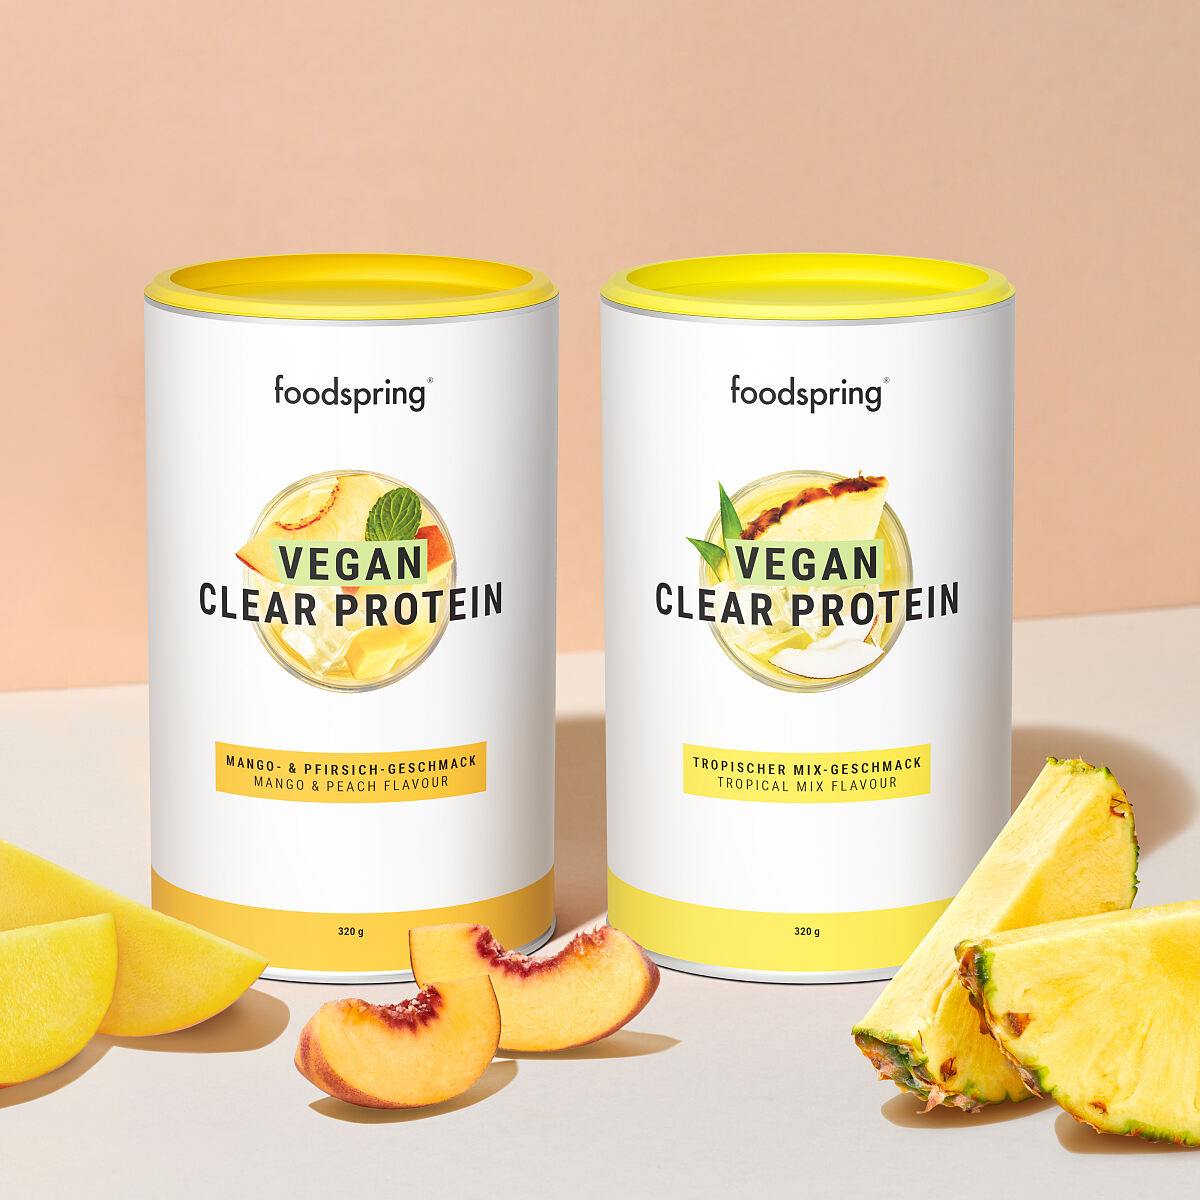 foodspring Vegan Clear Protein Mango und Pfirsischgeschmack und Tropischer Mix Geschmack EUR 3299 1 - A REFRESHING VEGAN TASTE OF SUMMER